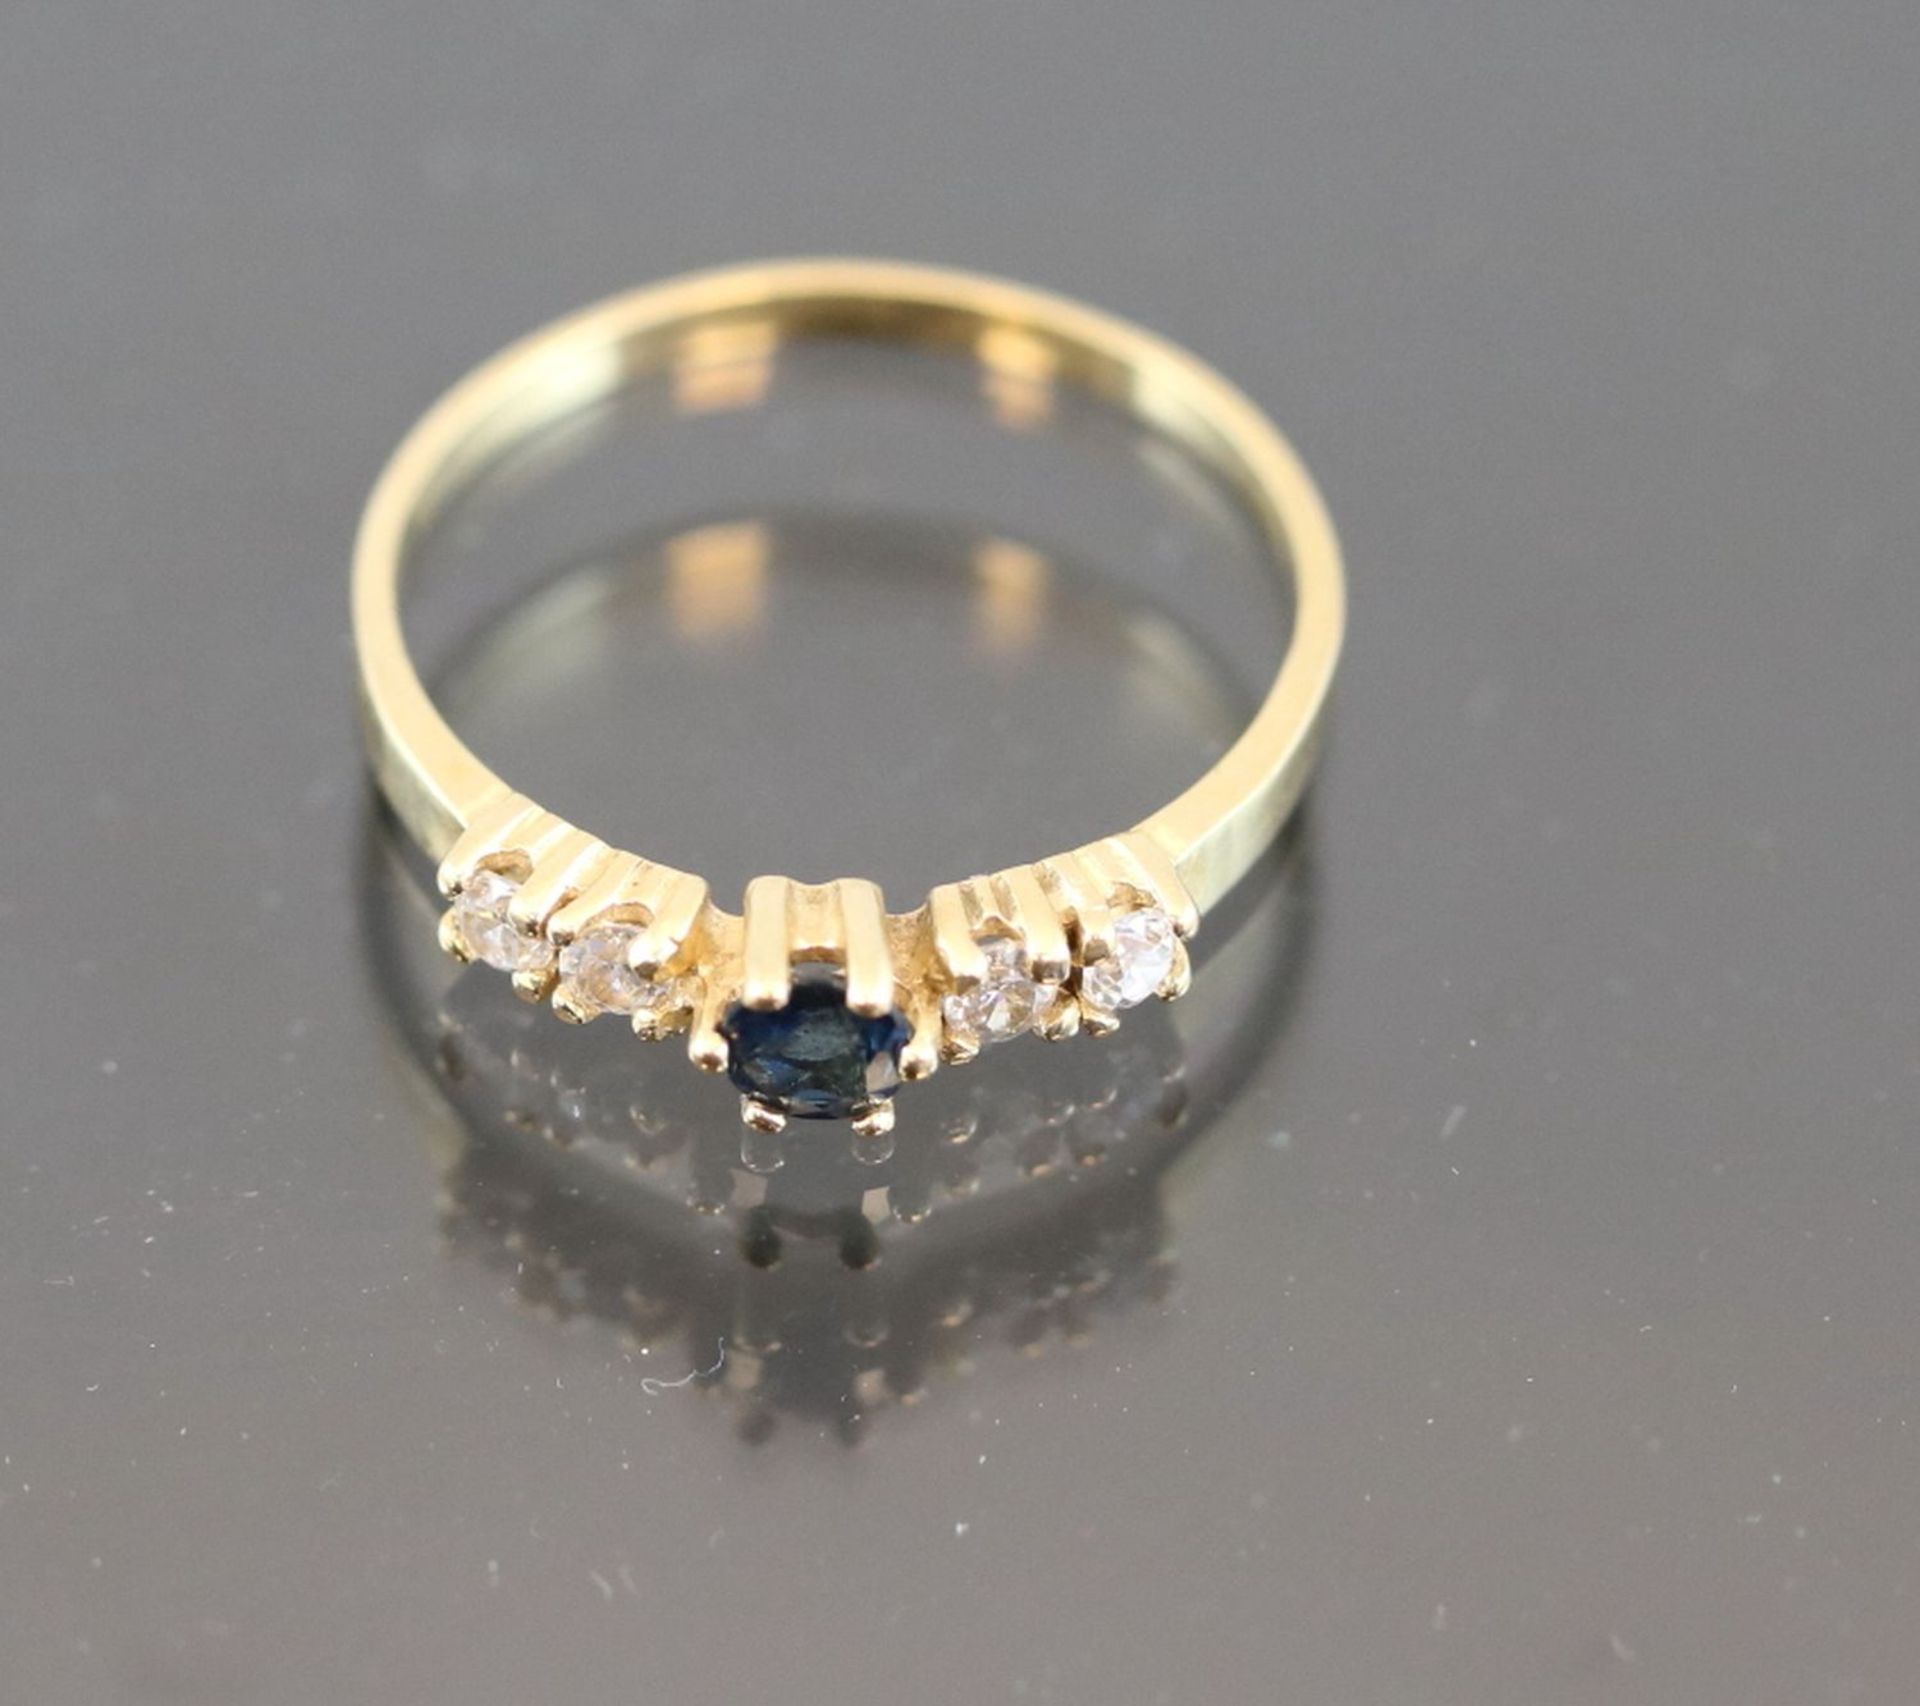 Saphir-Ring, 750 Gelbgold1,8 Gramm 1 Saphir, 0,08 ct., blau. Ringgröße: 54Schätzpreis: 350,-